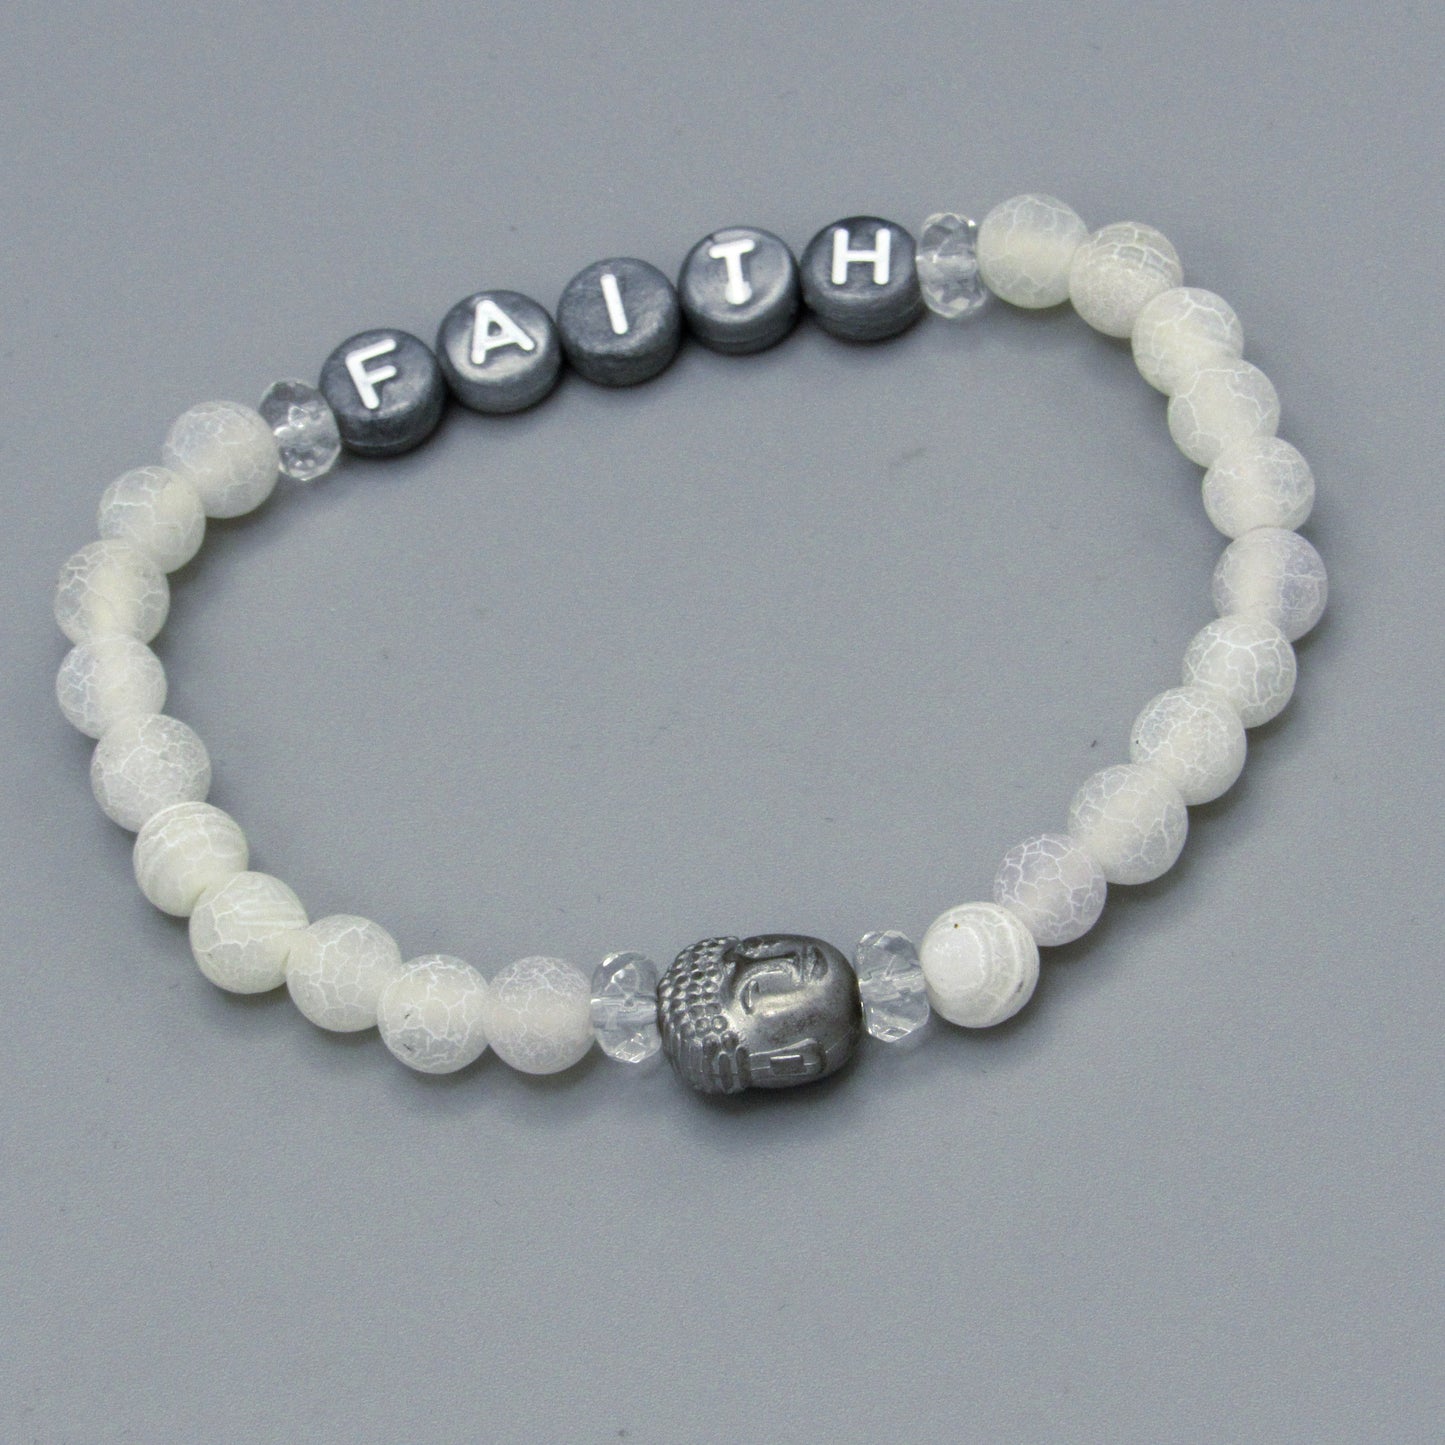 Matte Spider Vein and White Agate Gemstone “Faith” Bracelet with Hematite Buddha